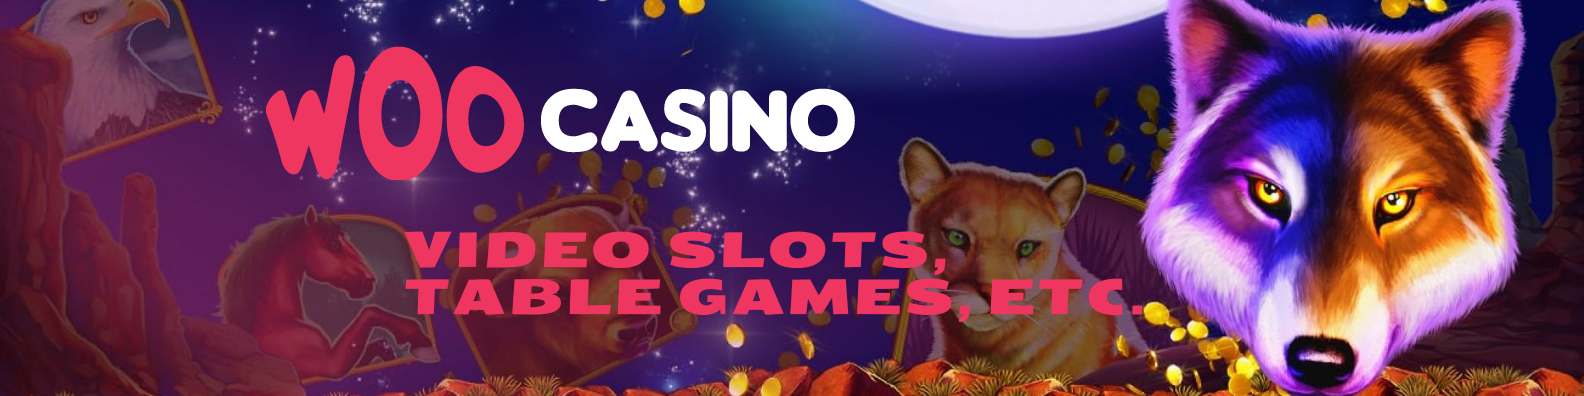 Woo Casino Games